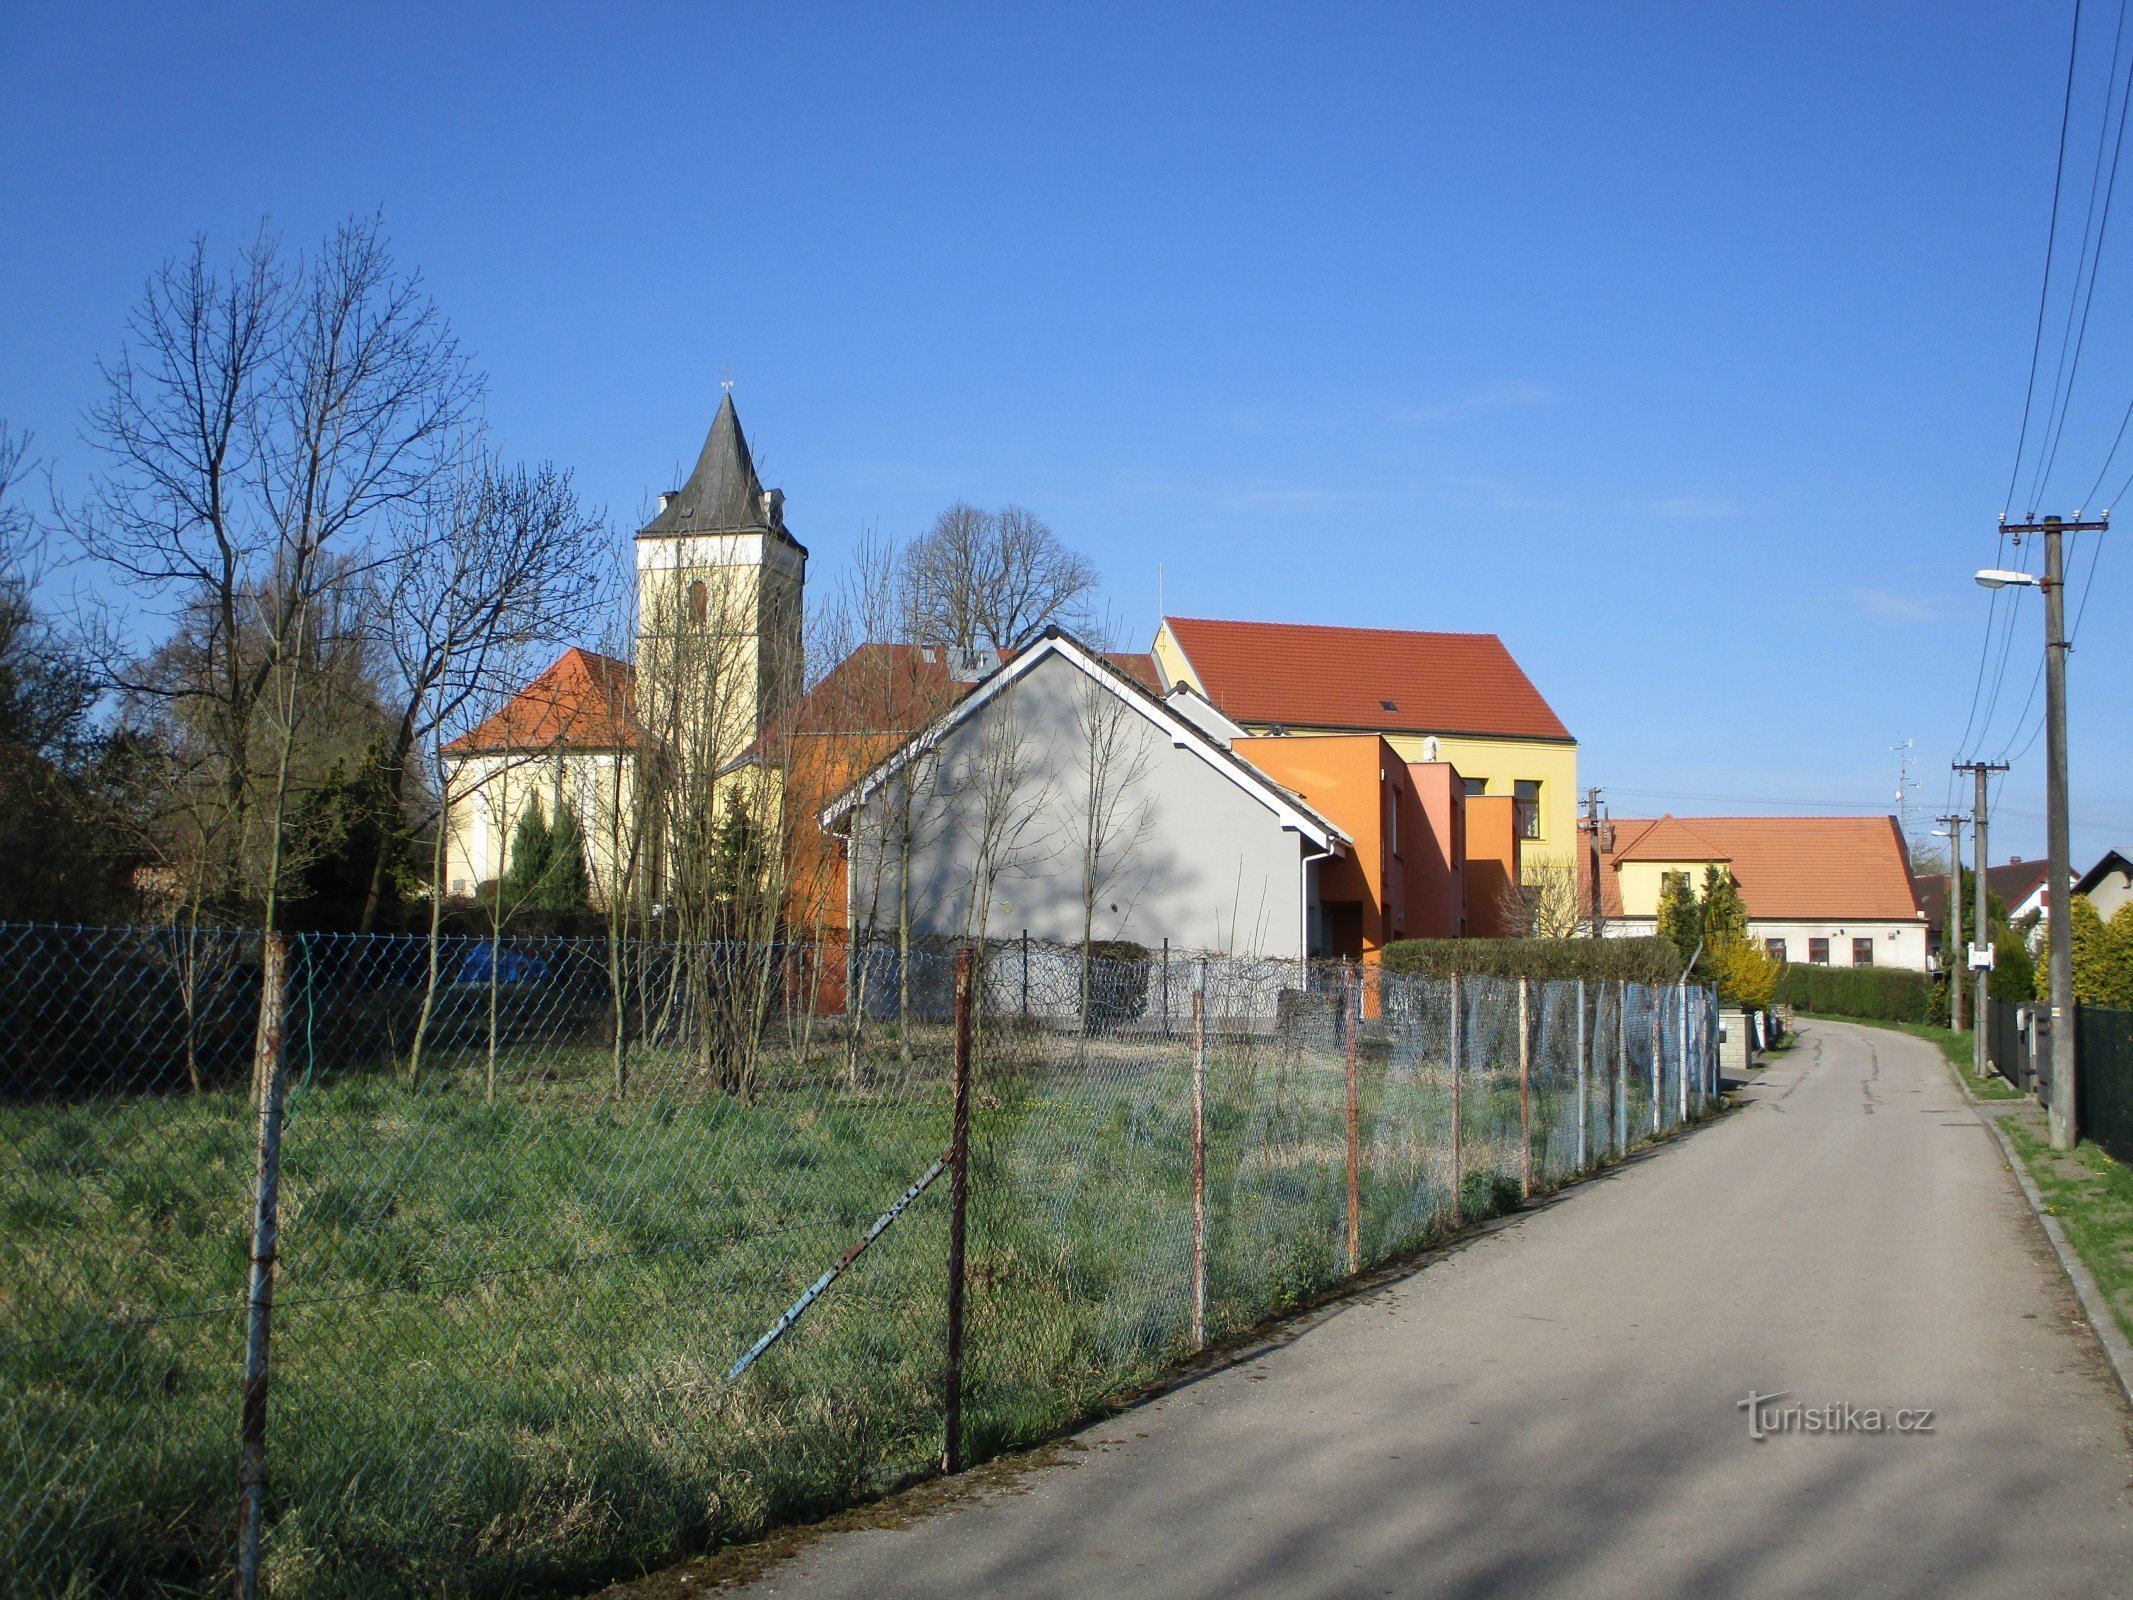 Näkymä kirkolle ja koululle (Lochenice)